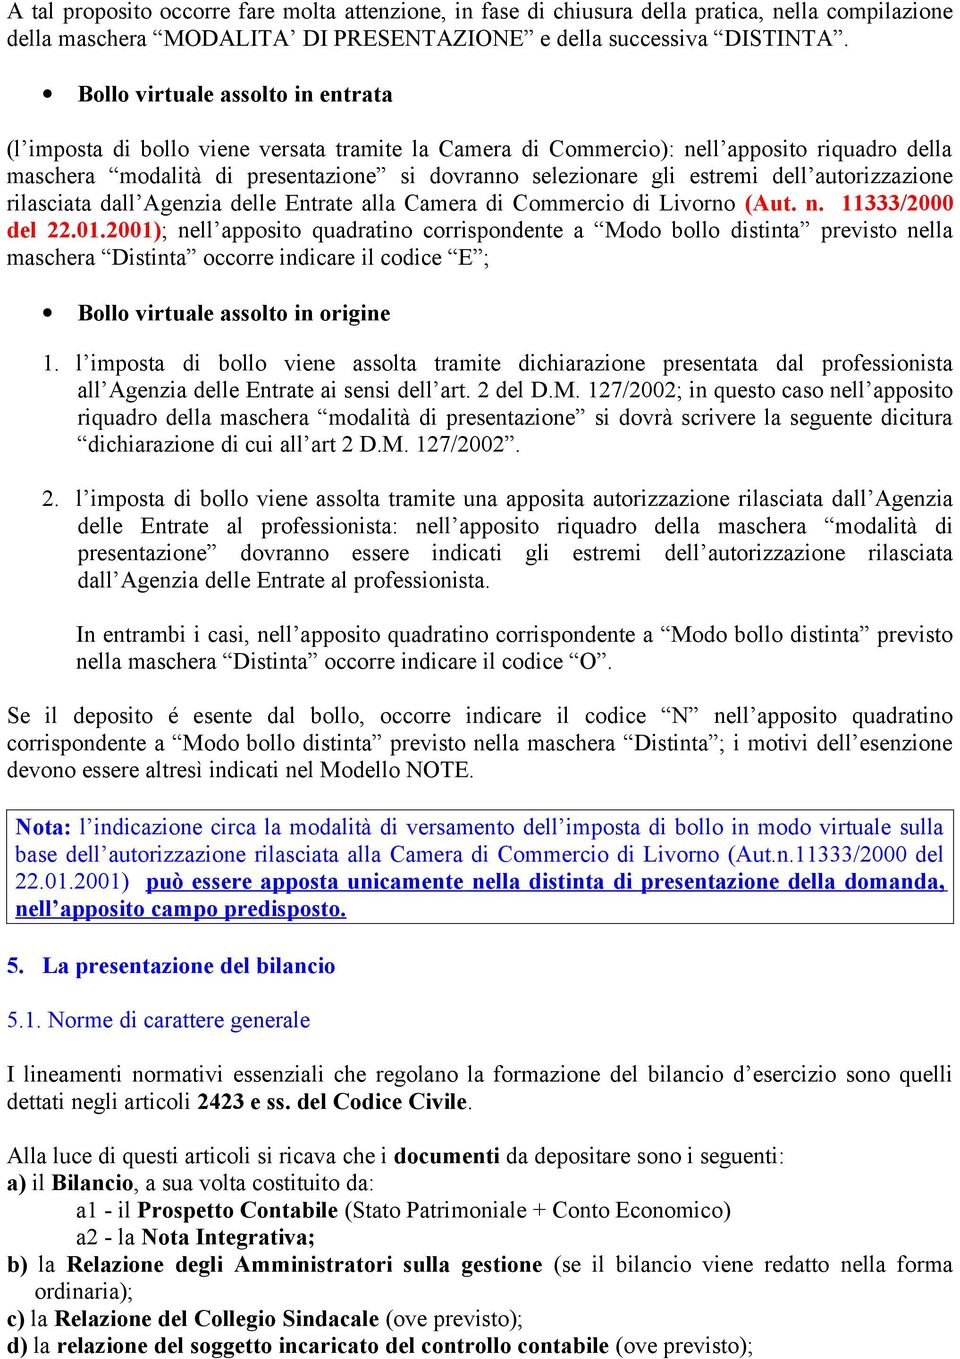 estremi dell autorizzazione rilasciata dall Agenzia delle Entrate alla Camera di Commercio di Livorno (Aut. n. 11333/2000 del 22.01.